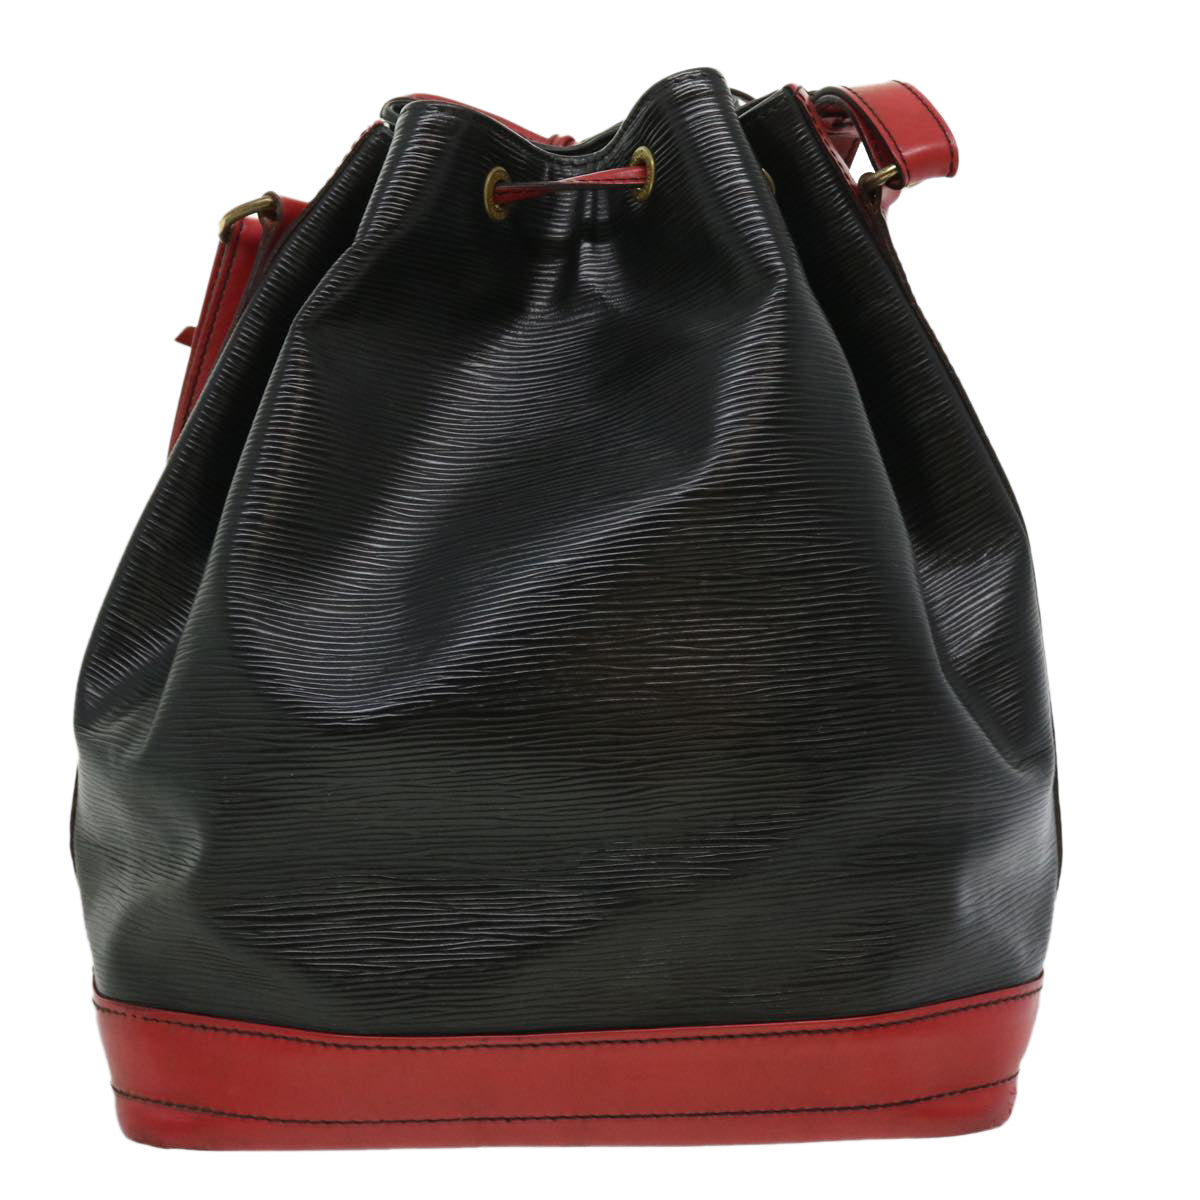 LOUIS VUITTON Epi By color Noe Shoulder Bag Black Red M44017 LV Auth 31450 - 0